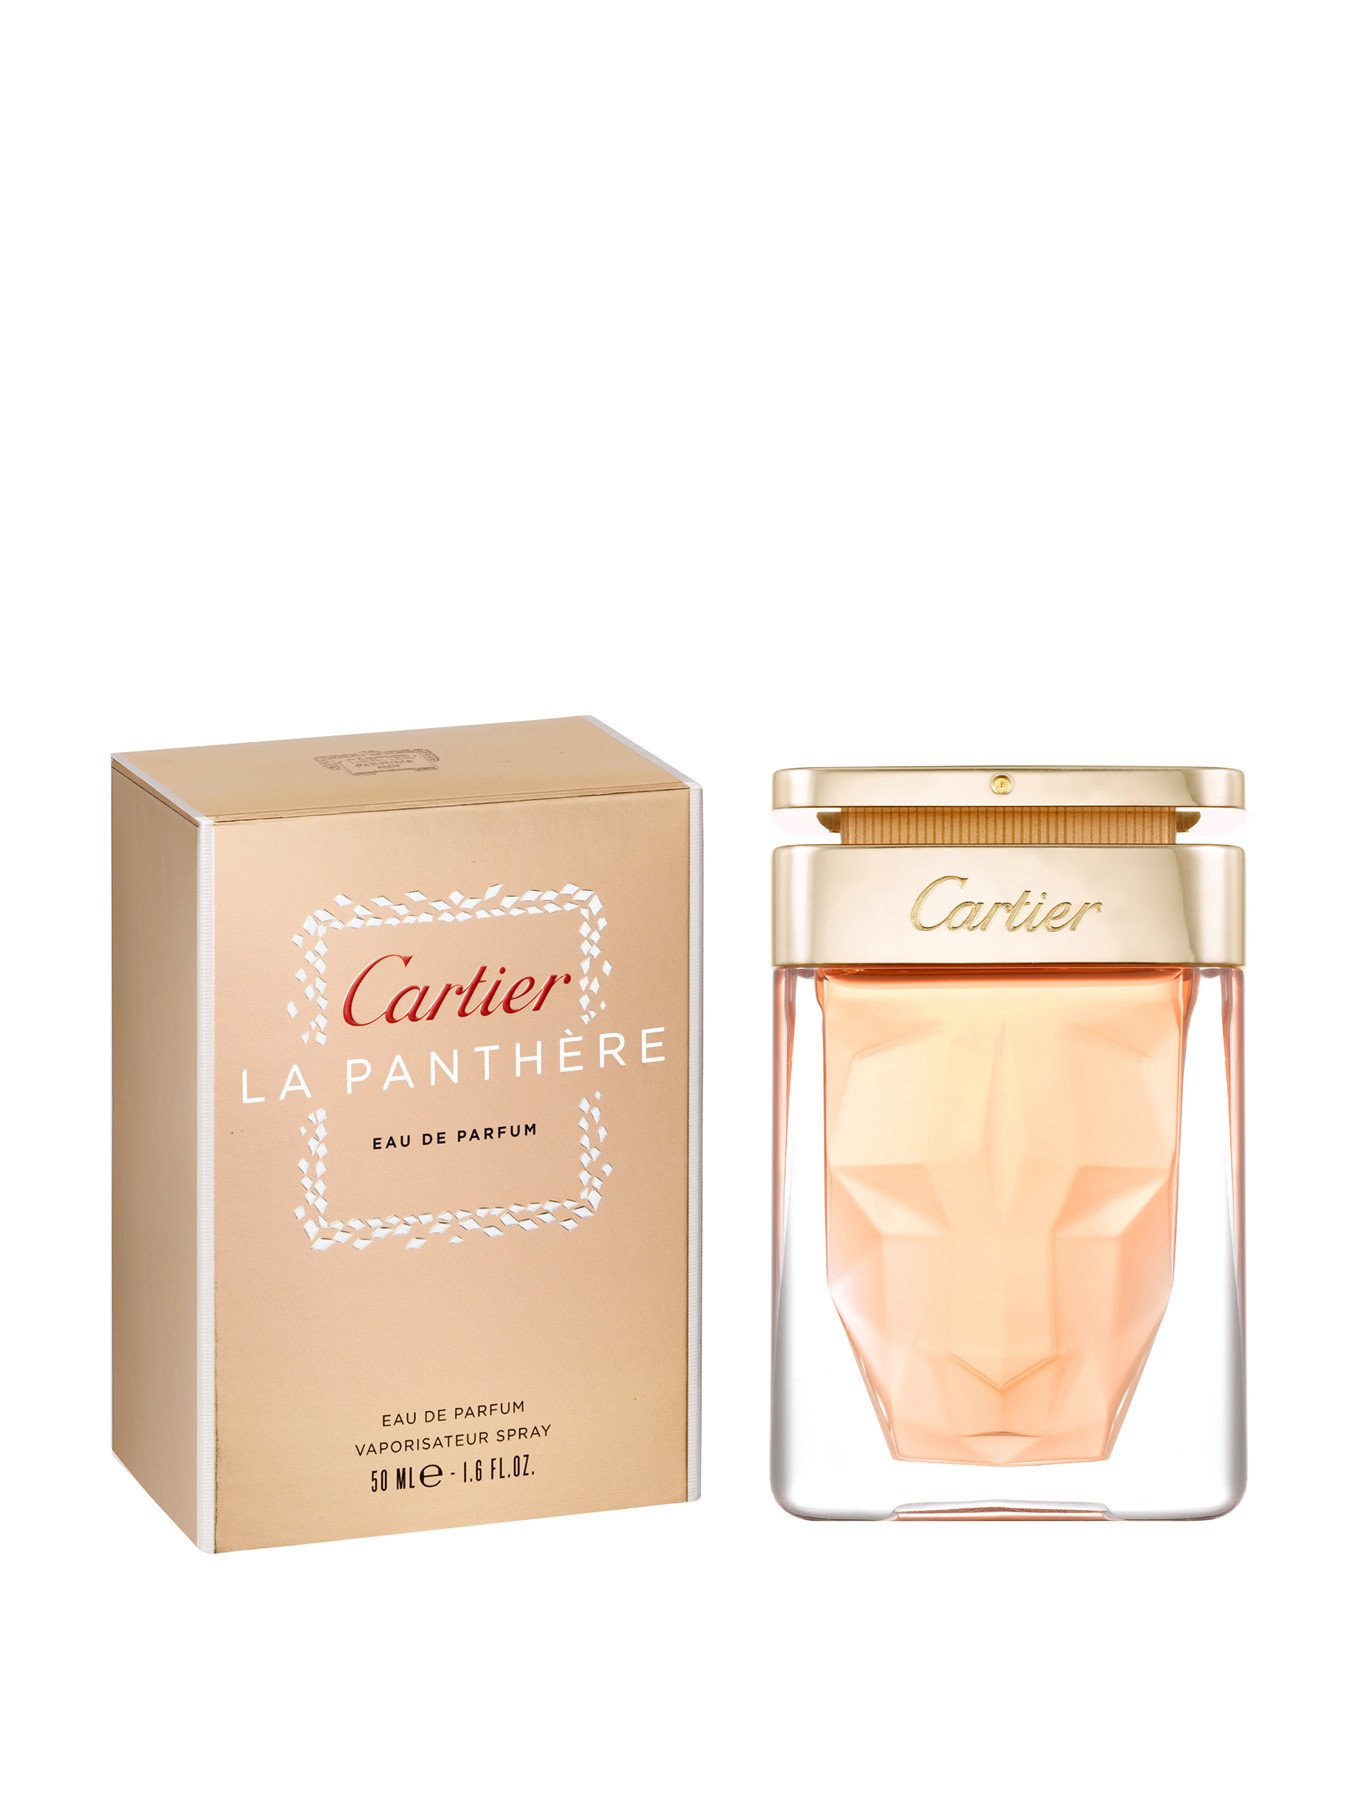 Cartier La Panthère Eau de Parfum 50ml | Fenwick